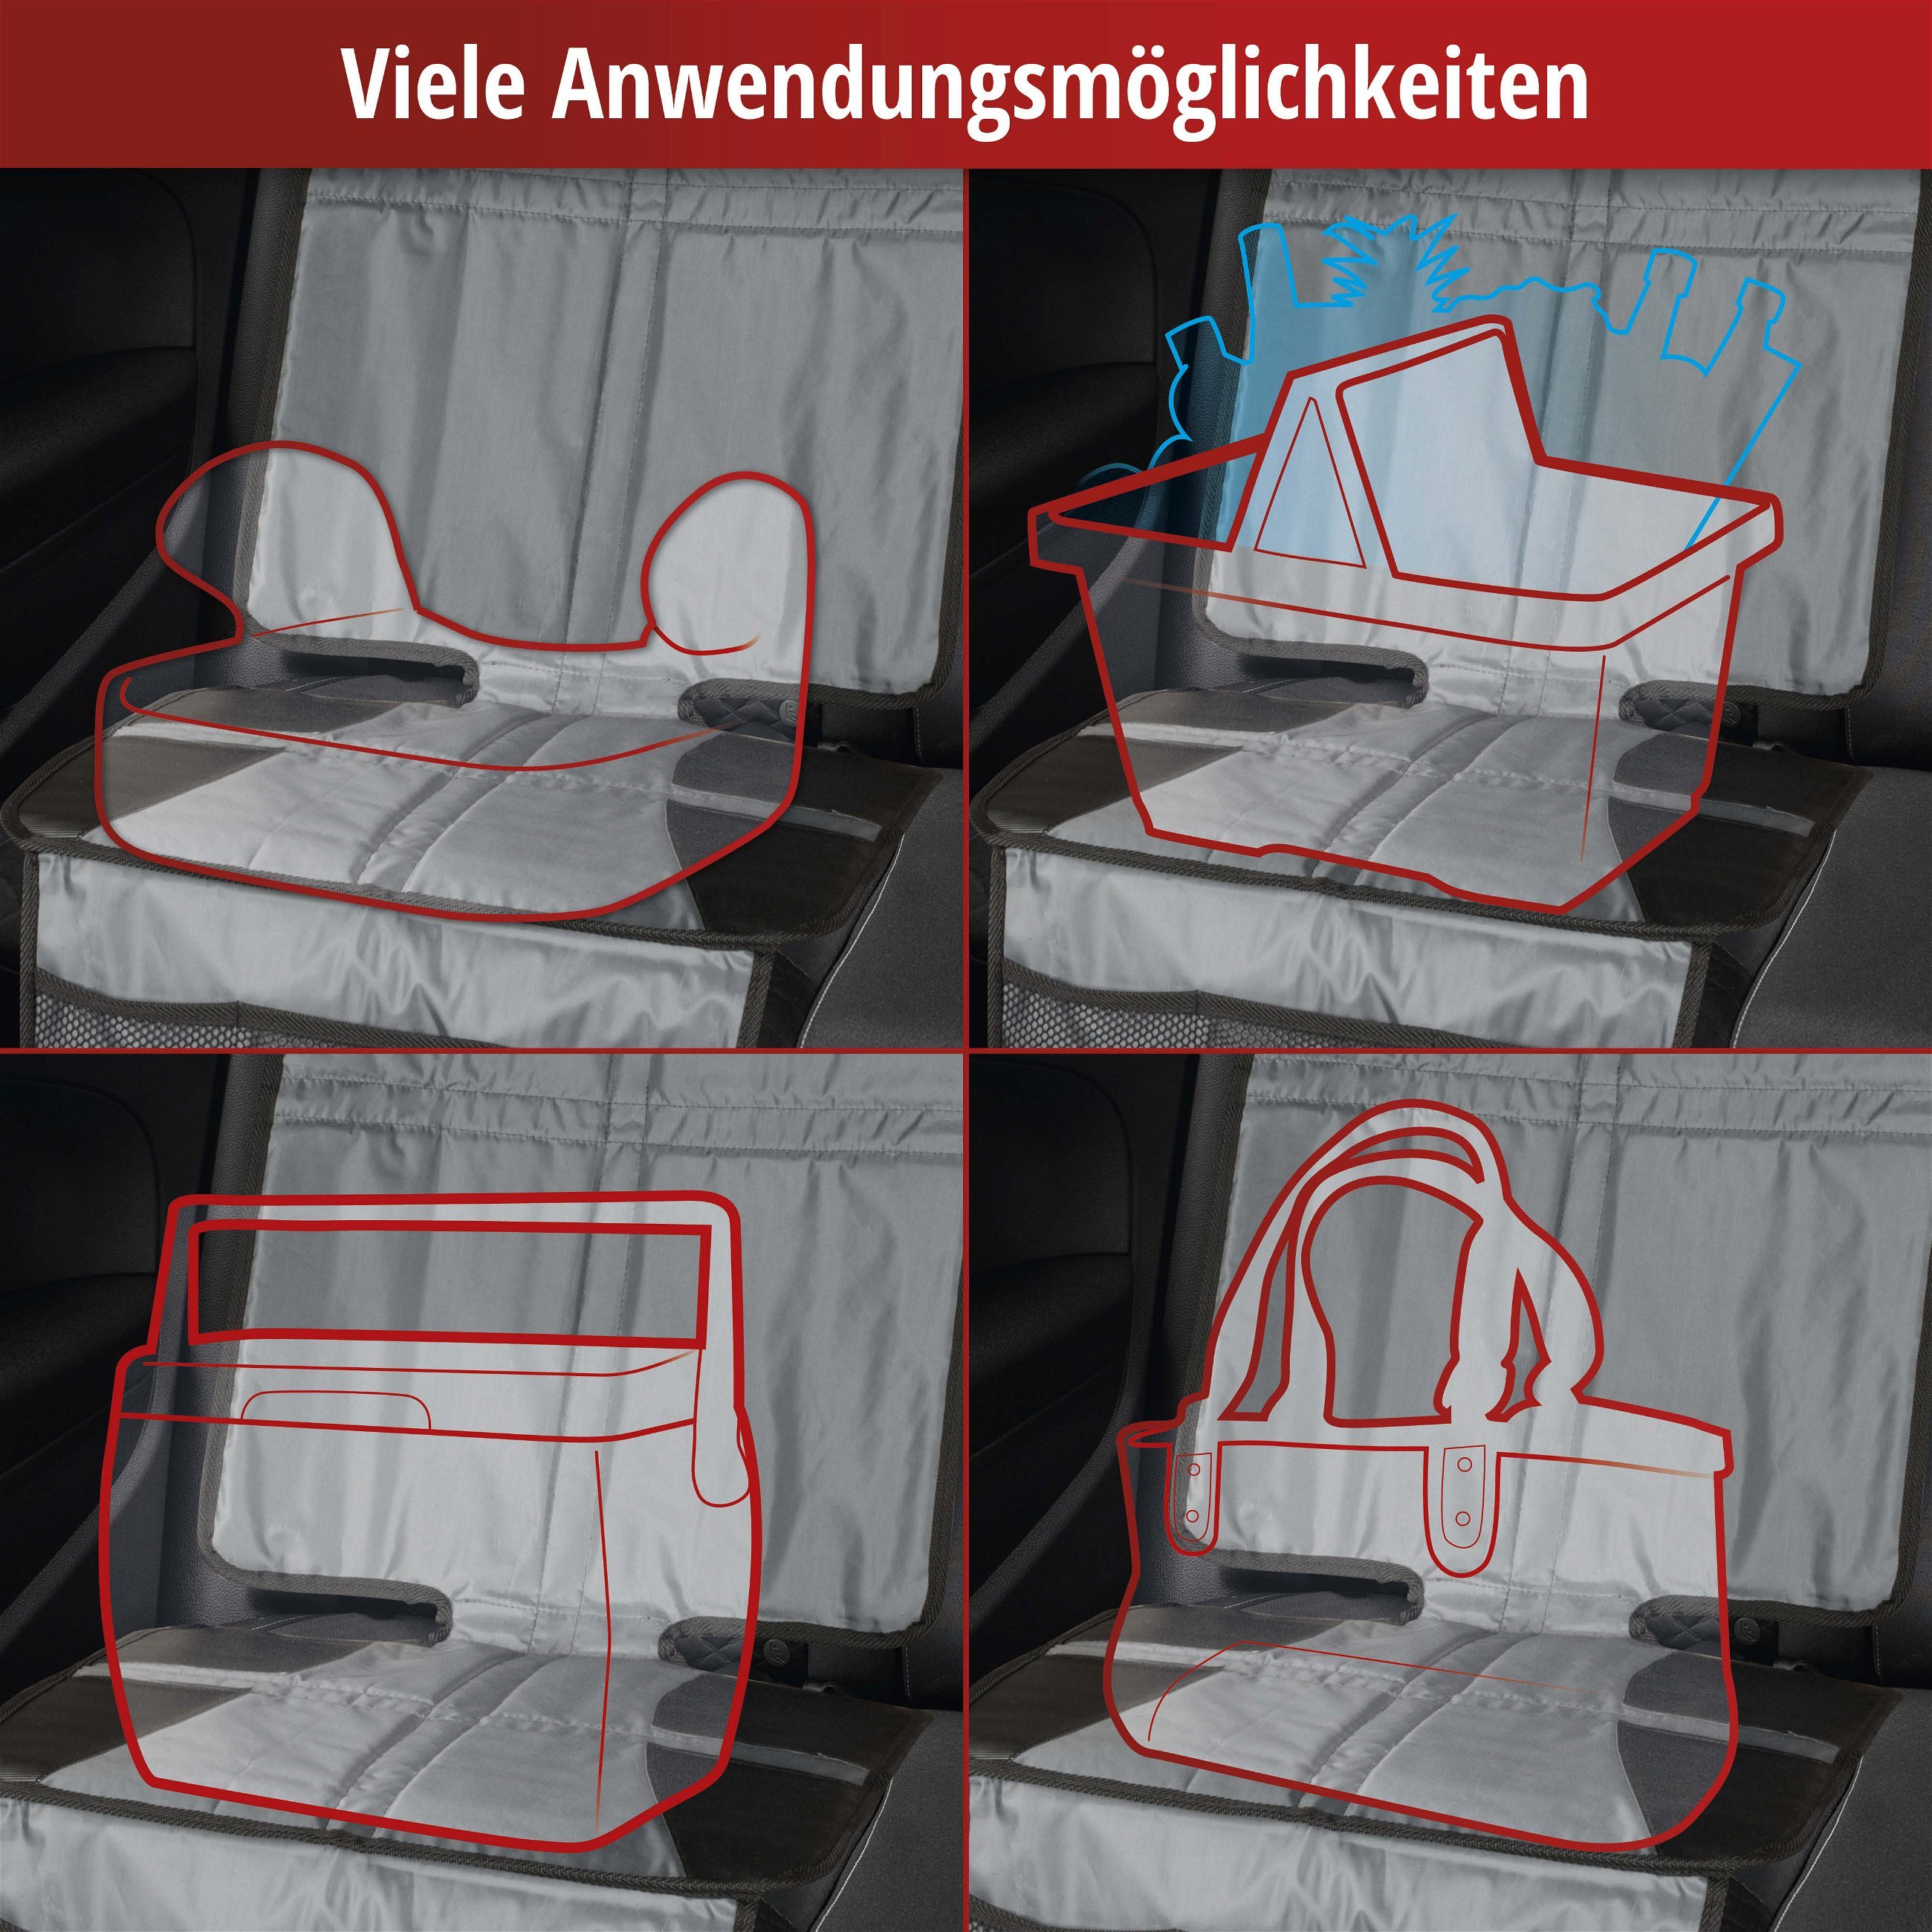 Kindersitzunterlage Protect XL, Auto-Schutzunterlage, Sitzschoner